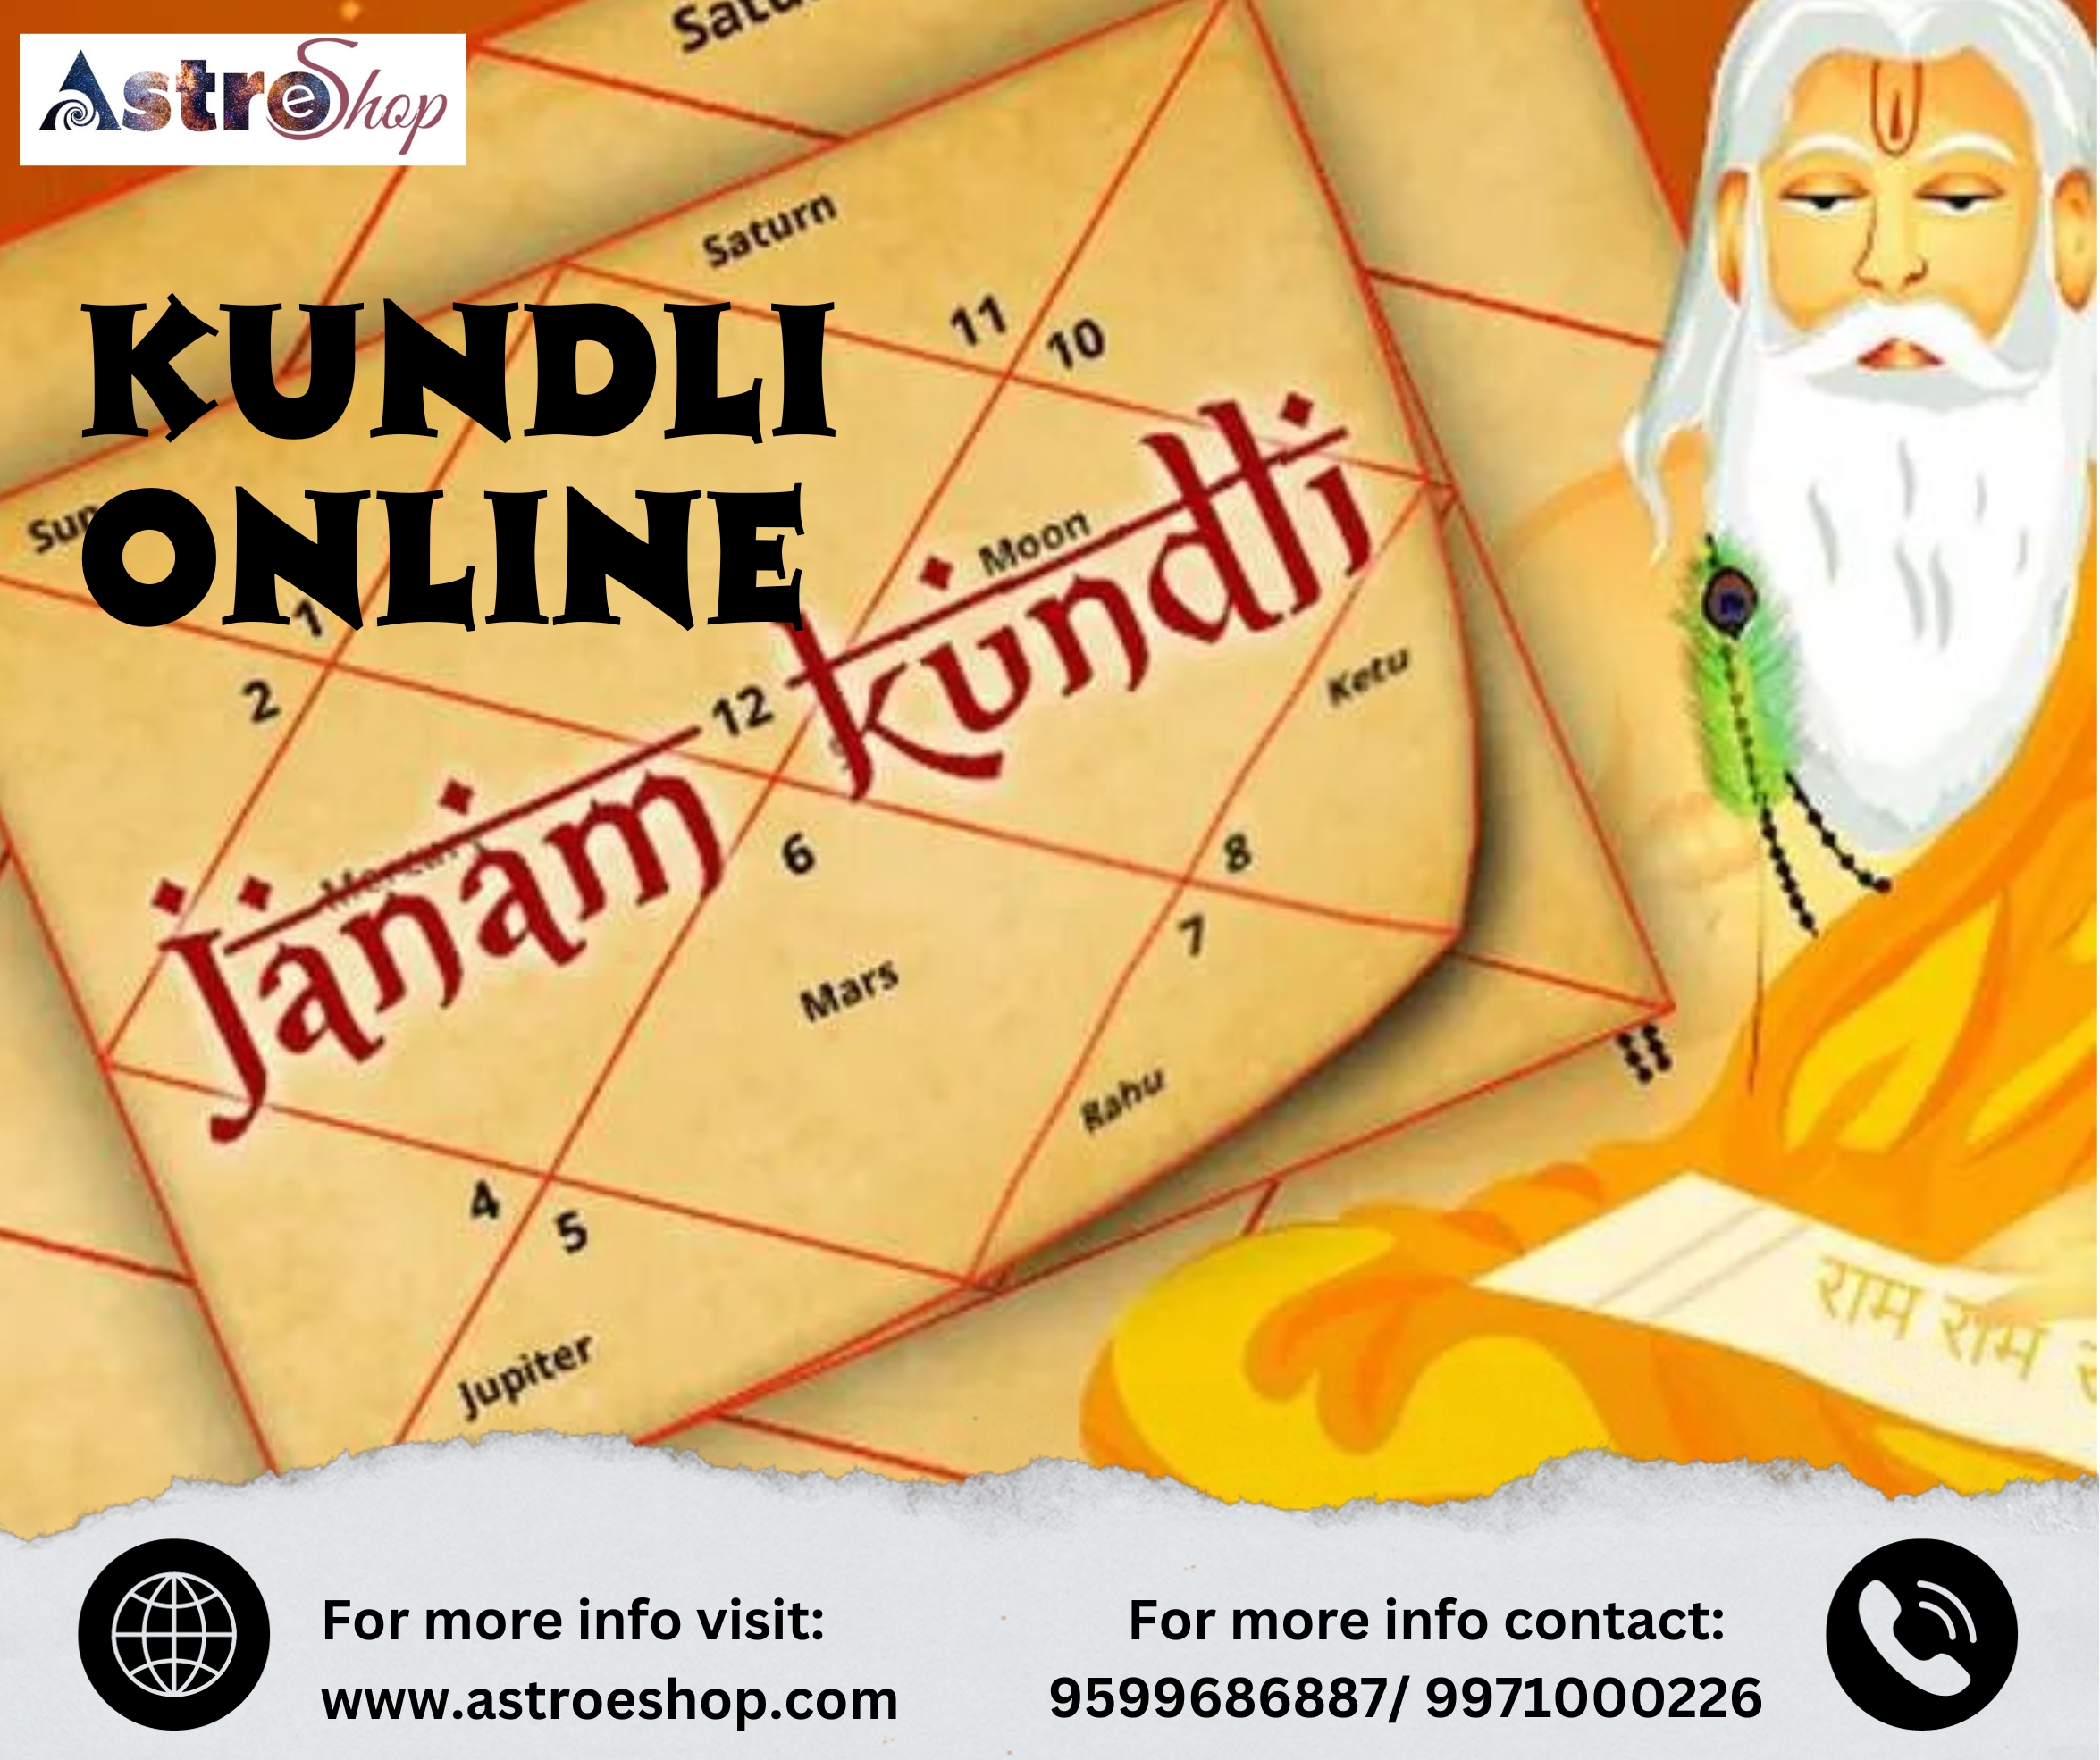 Kundli Online